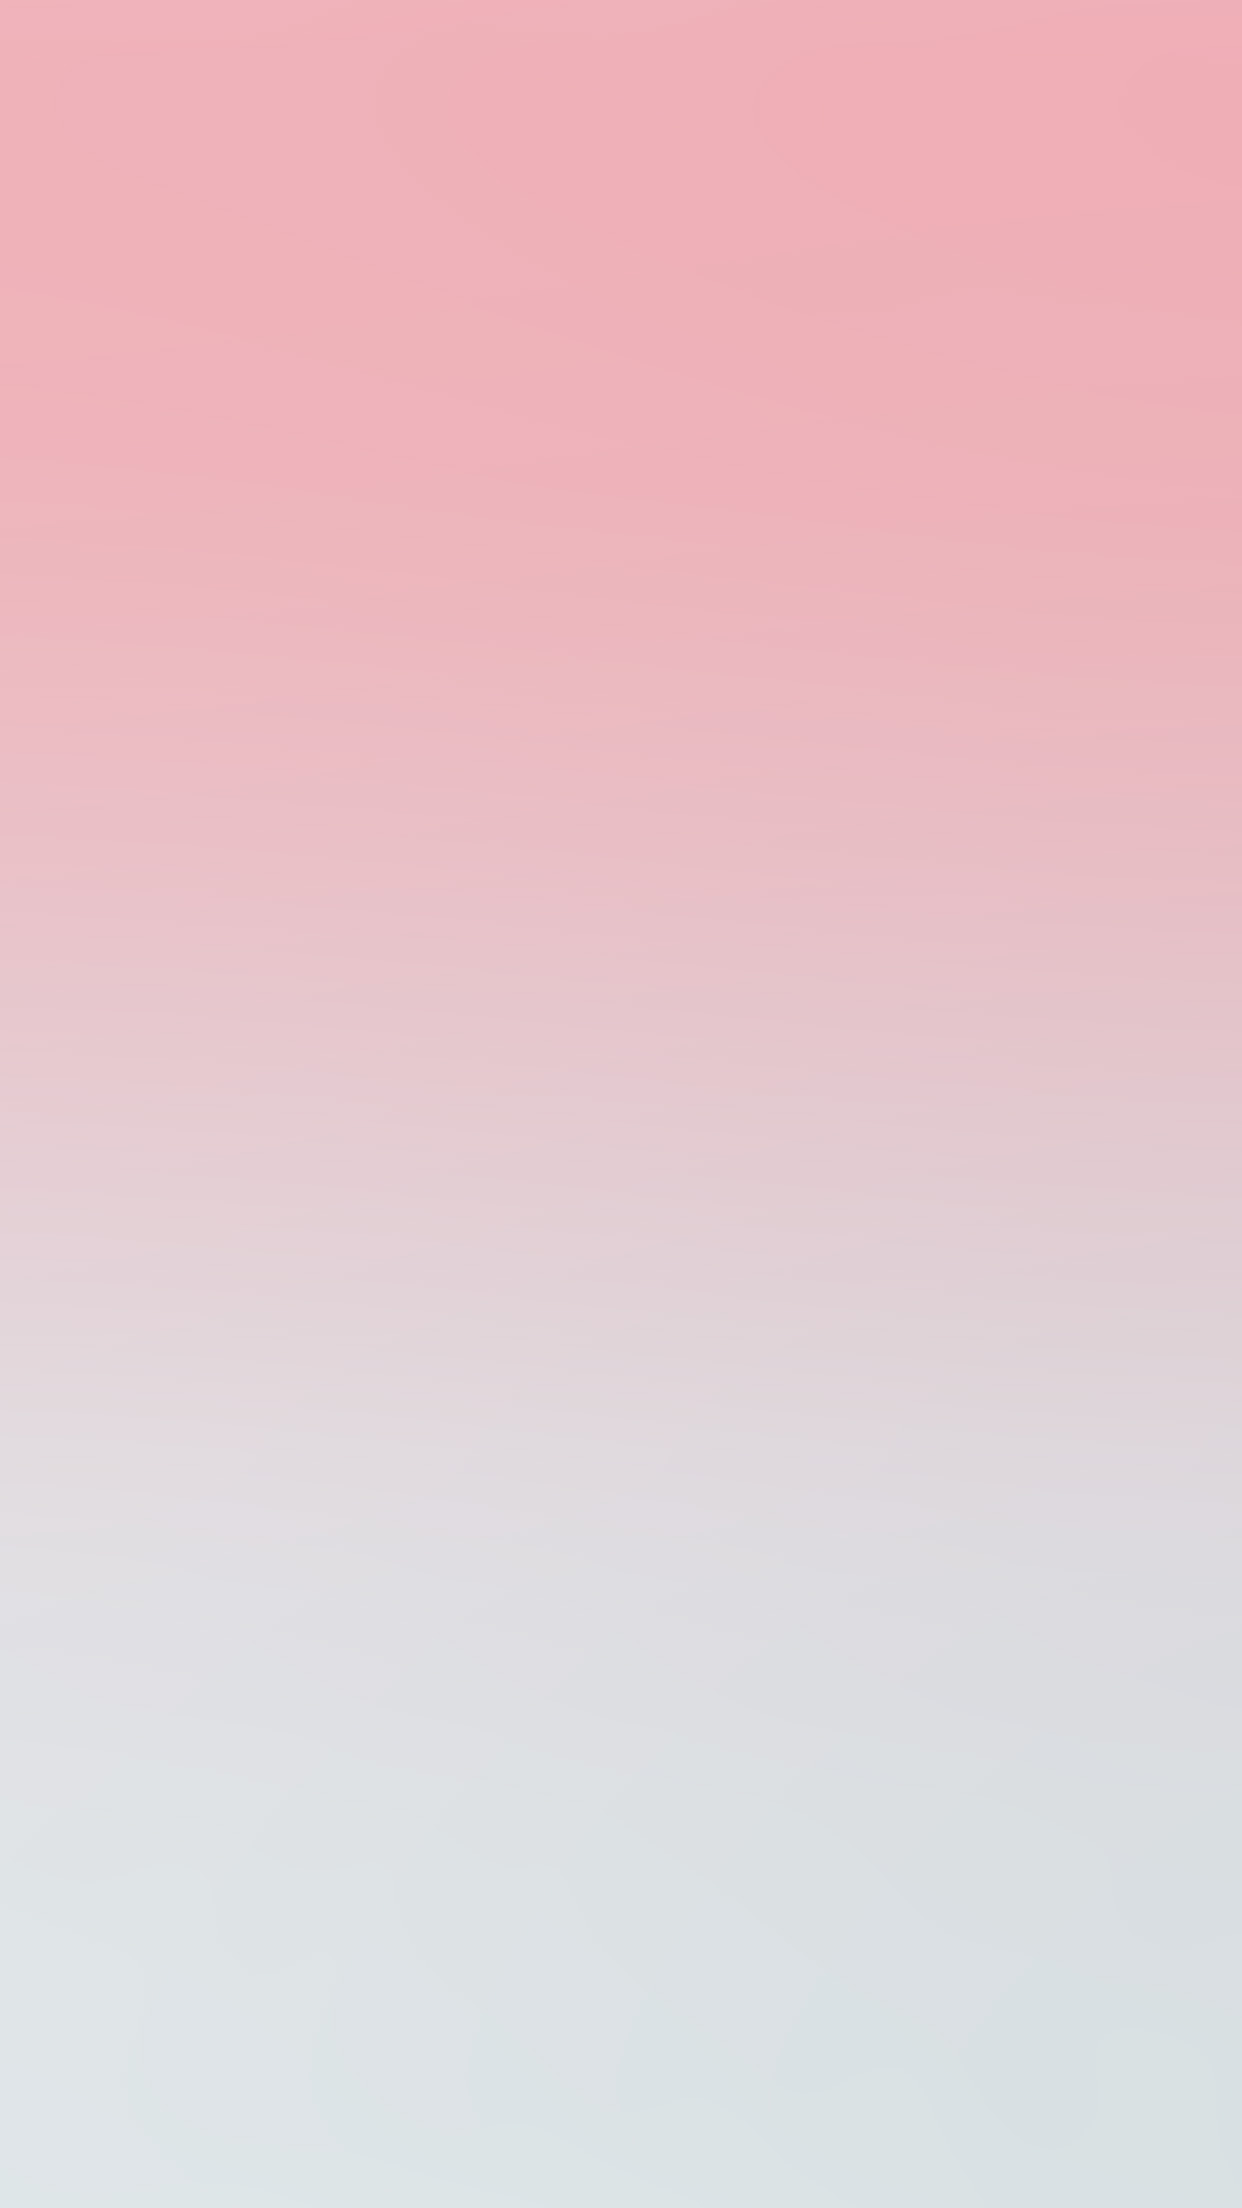 1242x2208 sn16-pink-sky-blur-gradation-wallpaper